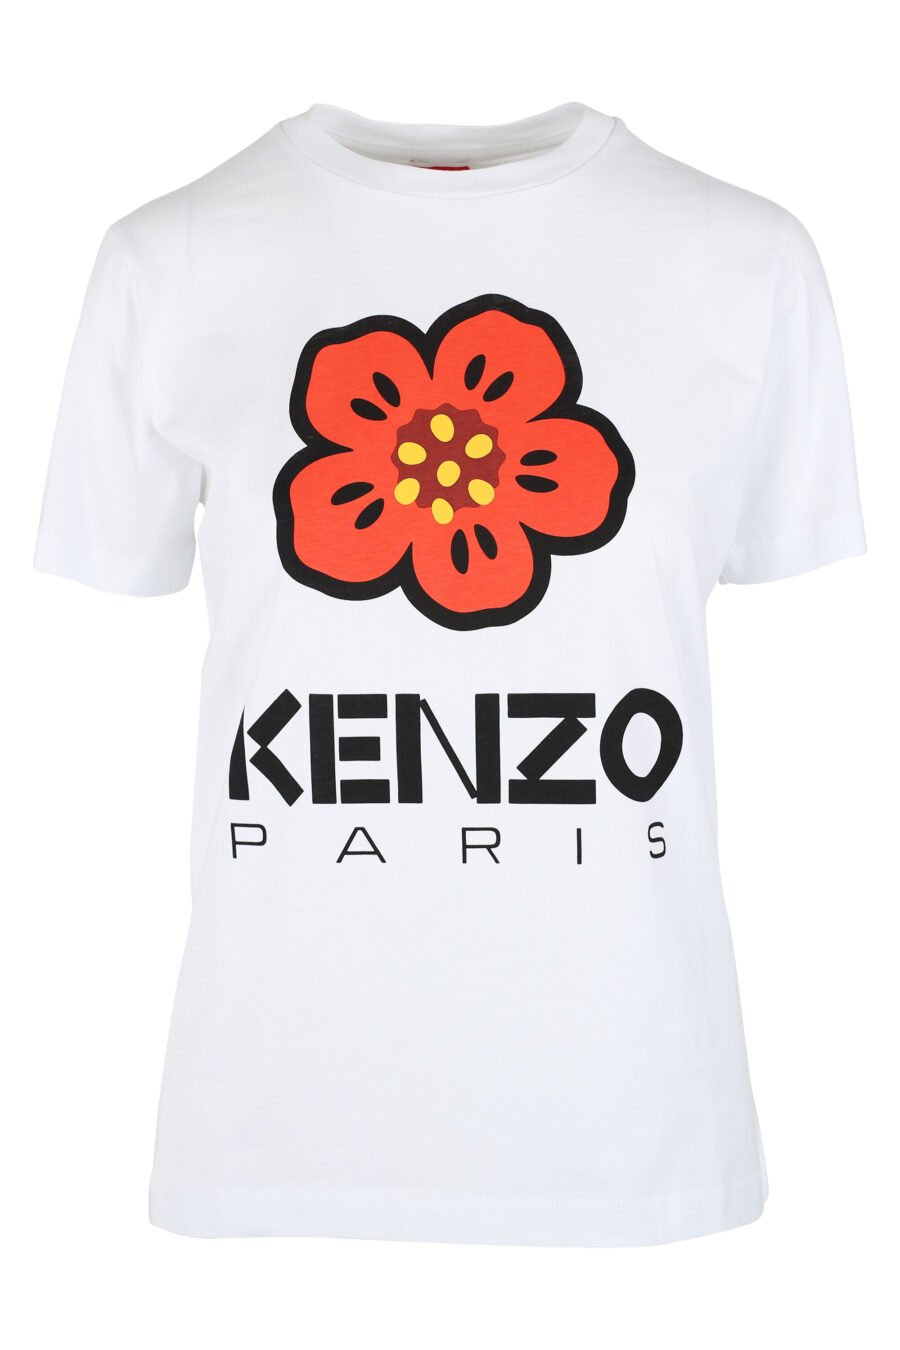 White T-shirt with orange flower maxilogo - IMG 9528